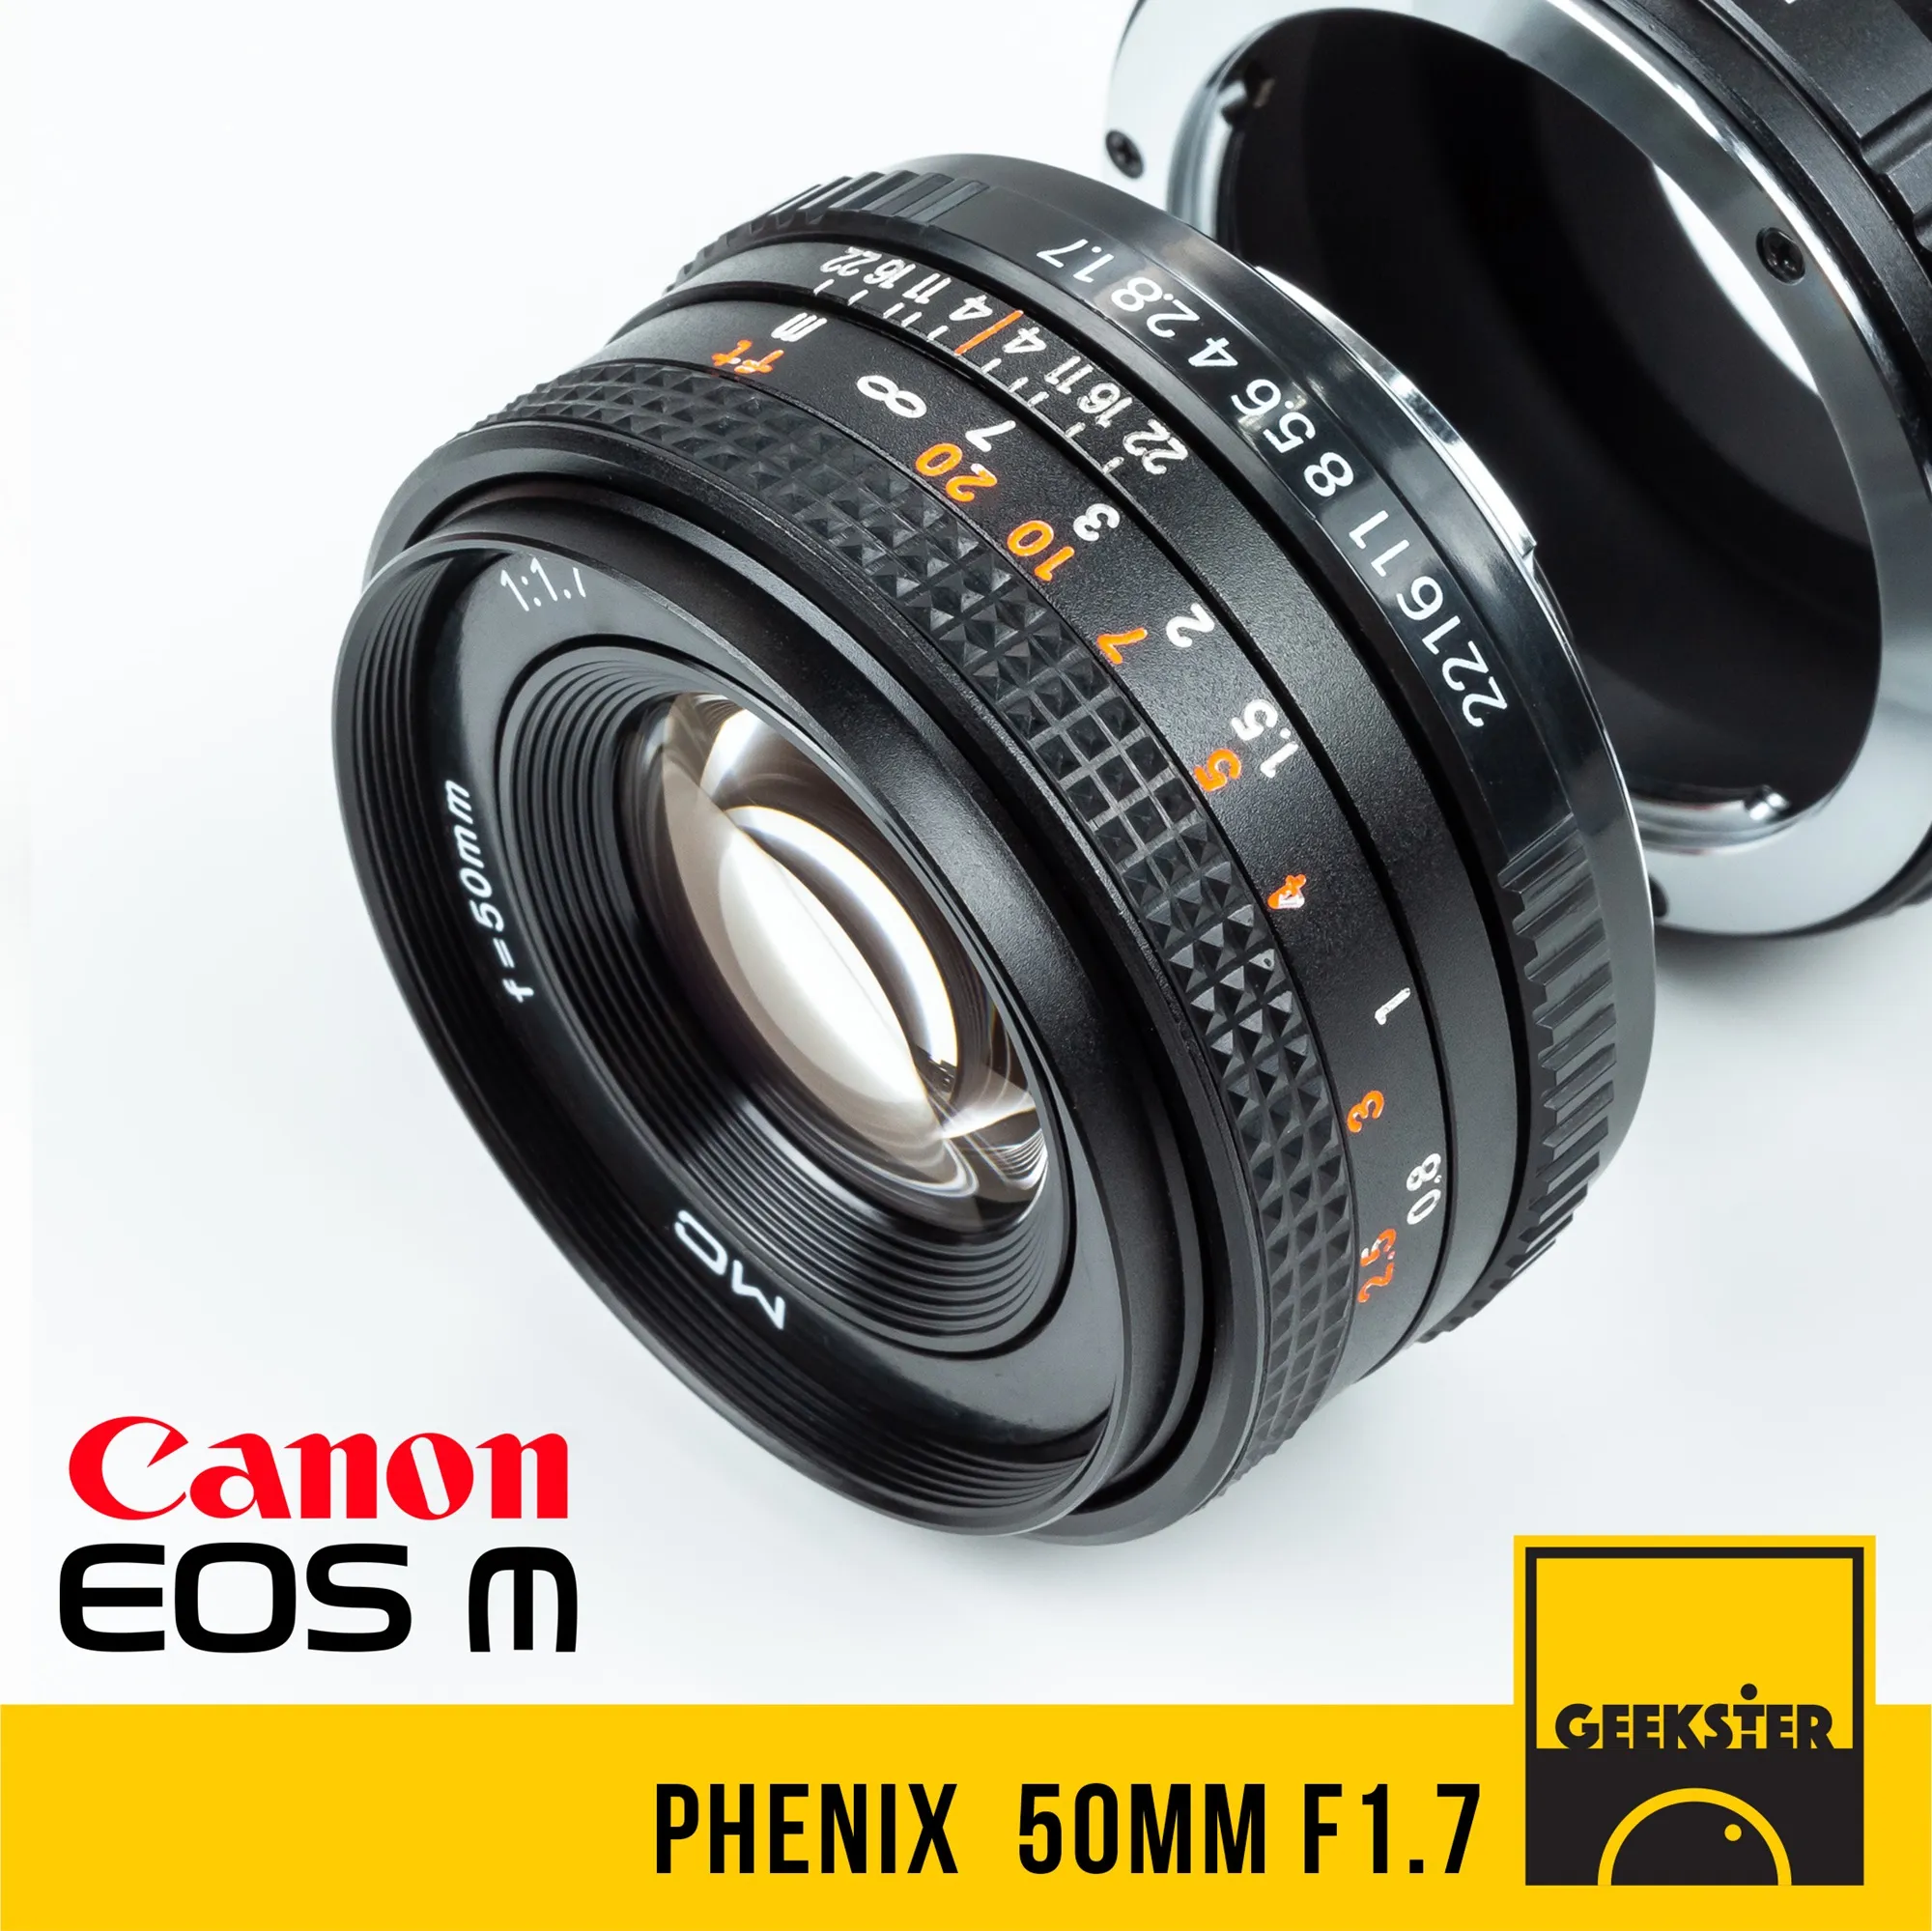 Phenix 50 mm F1.7 ✨ เลนส์ Full Frame เลนส์มือหมุน สำหรับใส่กล้อง Canon EOS M Mirrorless ได้ทุกรุ่น ( เลนส์หลังละลาย ) ( เลนส์ หน้าชัดหลังเบลอ ) ( สำหรับ กล้อง แคนนอน ) ( เมาท์ EOS M ) ( EOS M Mount ) ( 50mm 1.7 ) ( Geekster )